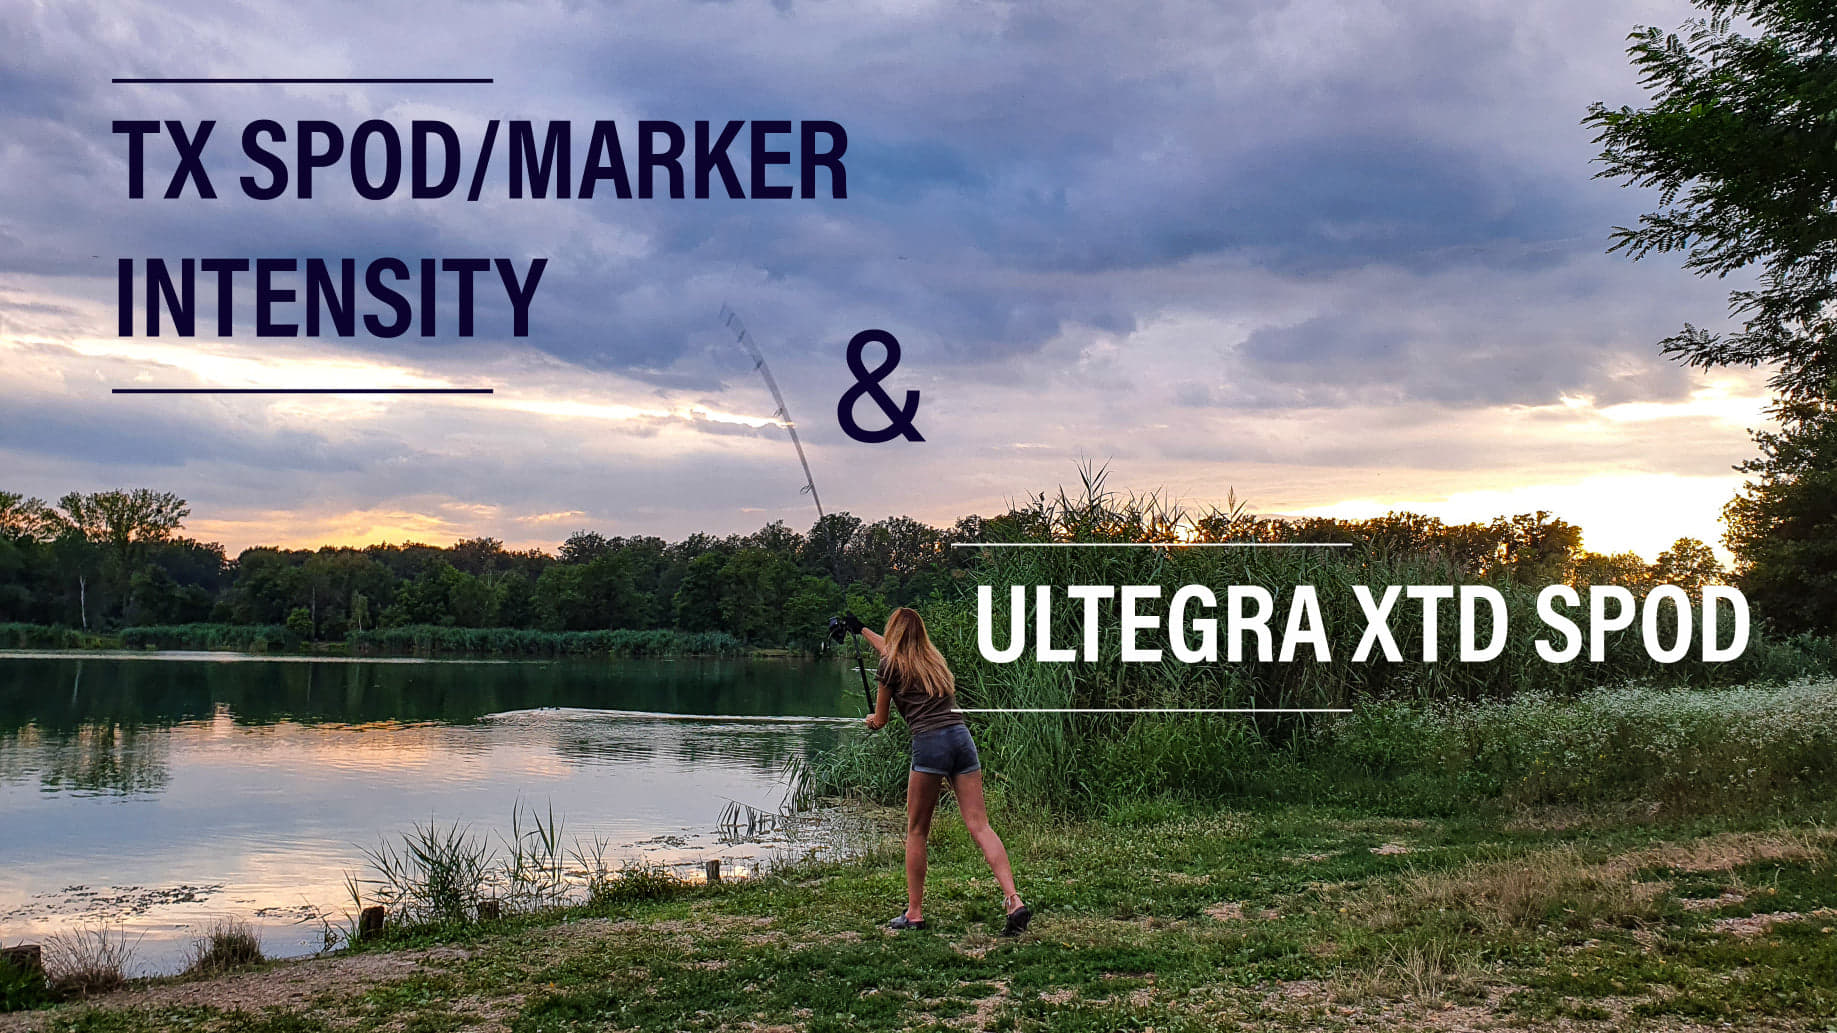 TX SPOD/Marker Intensity & Ultegra XTD Spod